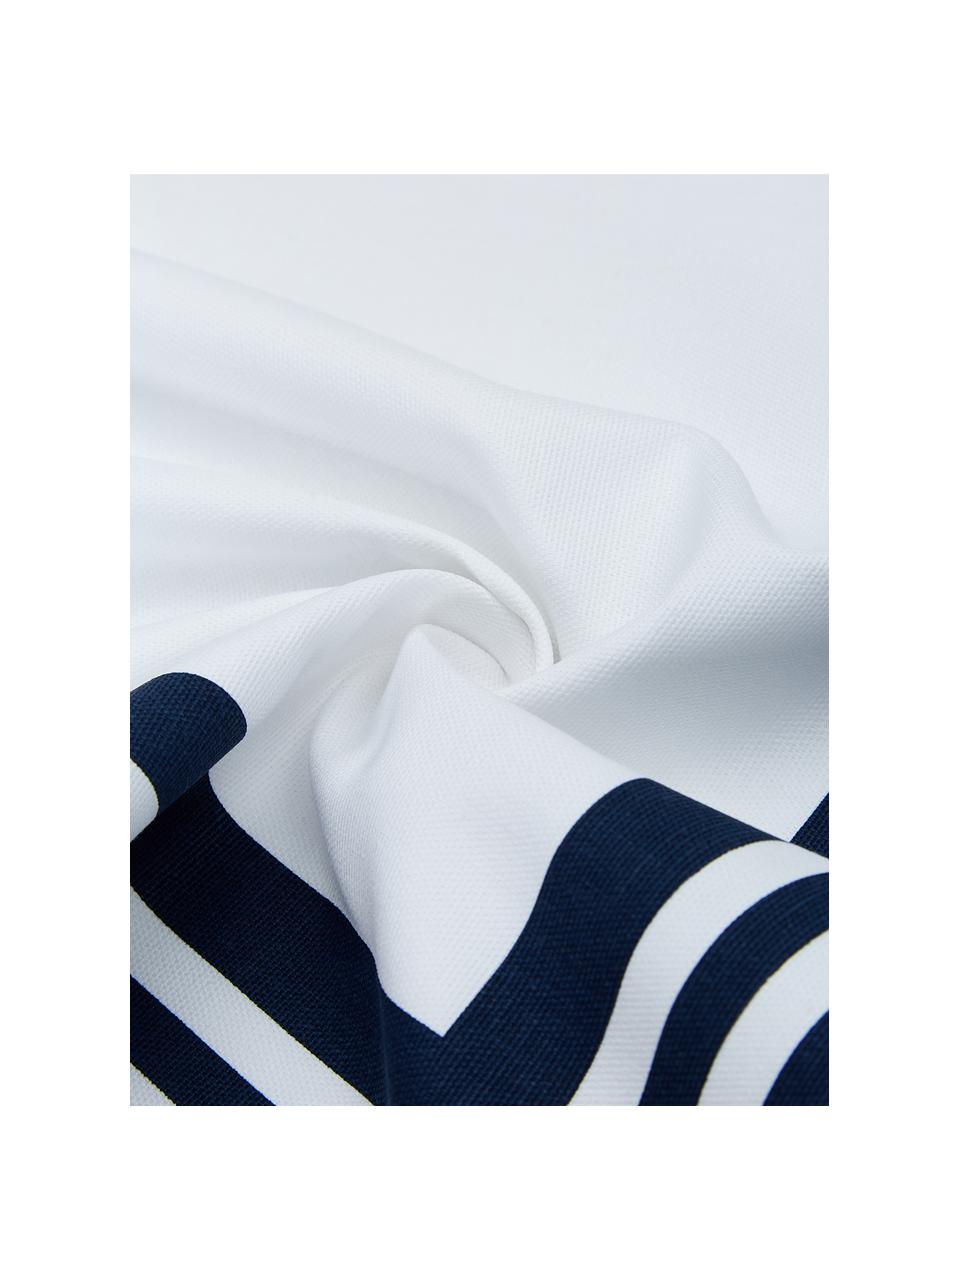 Kussenhoes Zahra in donkerblauw/wit met grafisch patroon, 100% katoen, Wit, donkerblauw, B 45 x L 45 cm